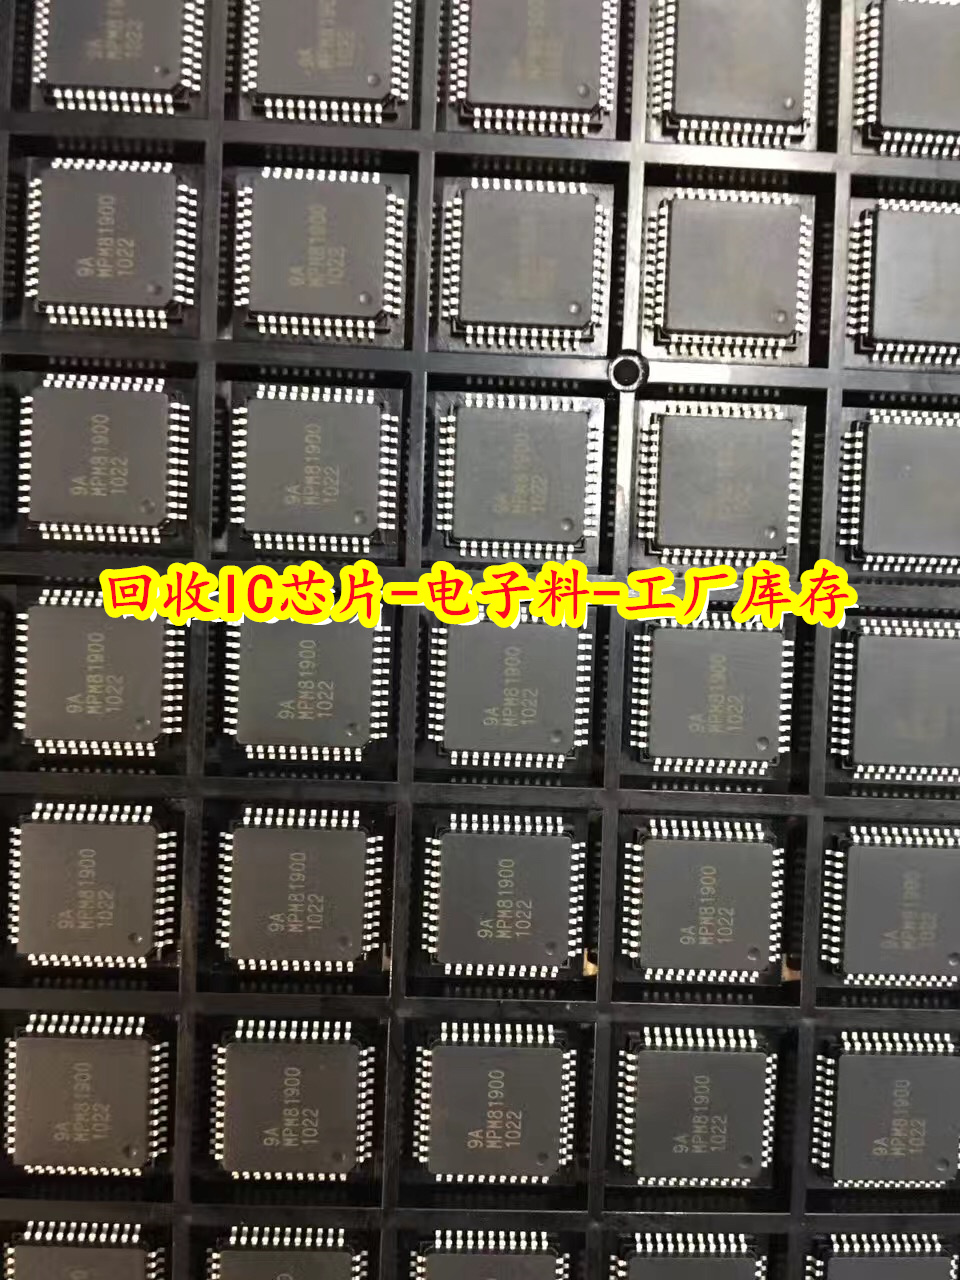 徐州回收NVIDIA芯片 回收美台芯片